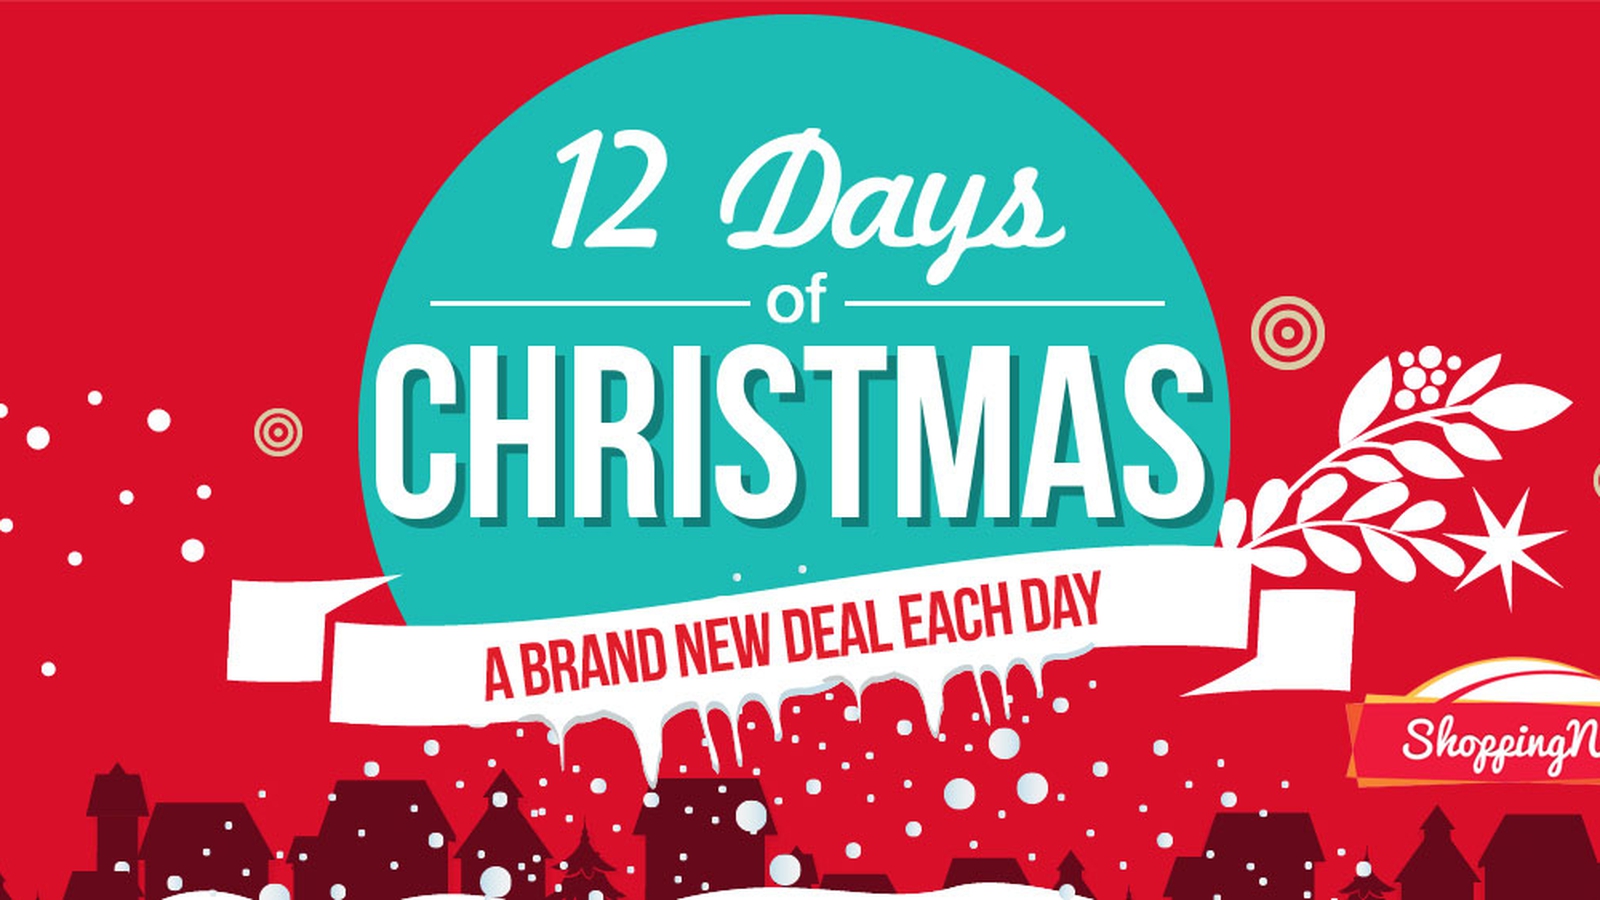 Autonomous Christmas 2018 Sales: 12 Days of Deals